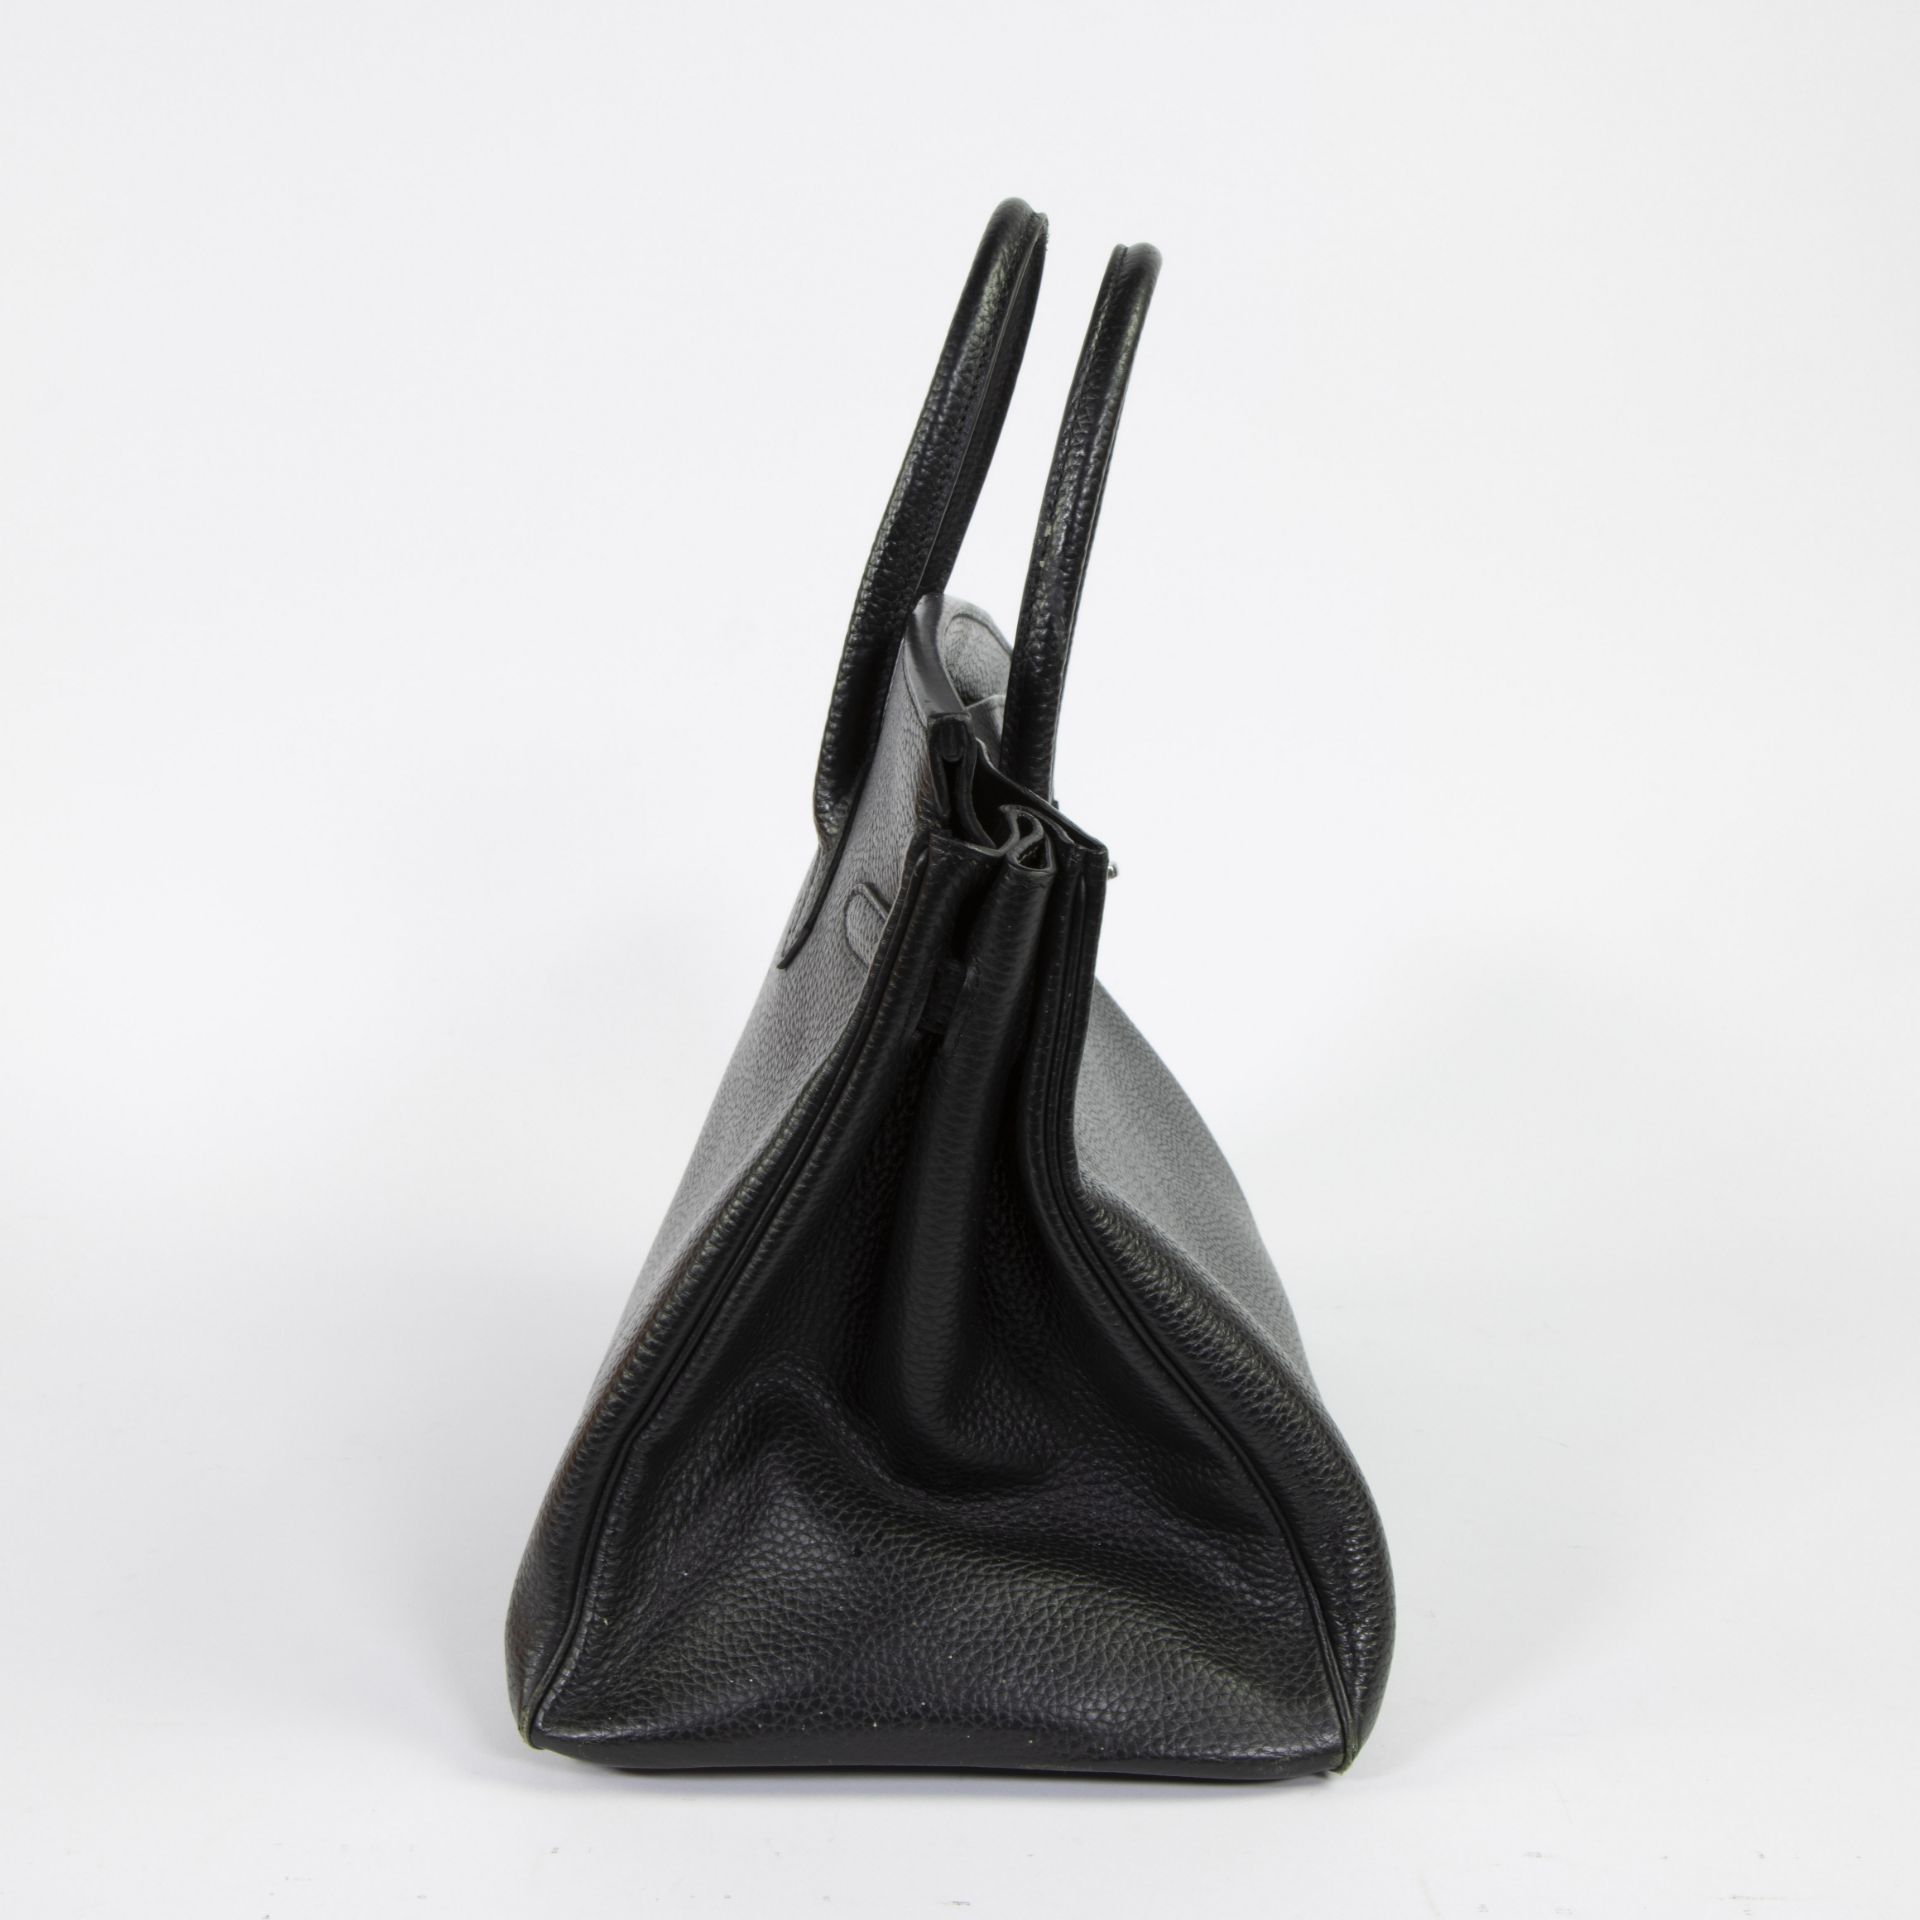 Birkin bag by Hermès Paris - Image 6 of 6